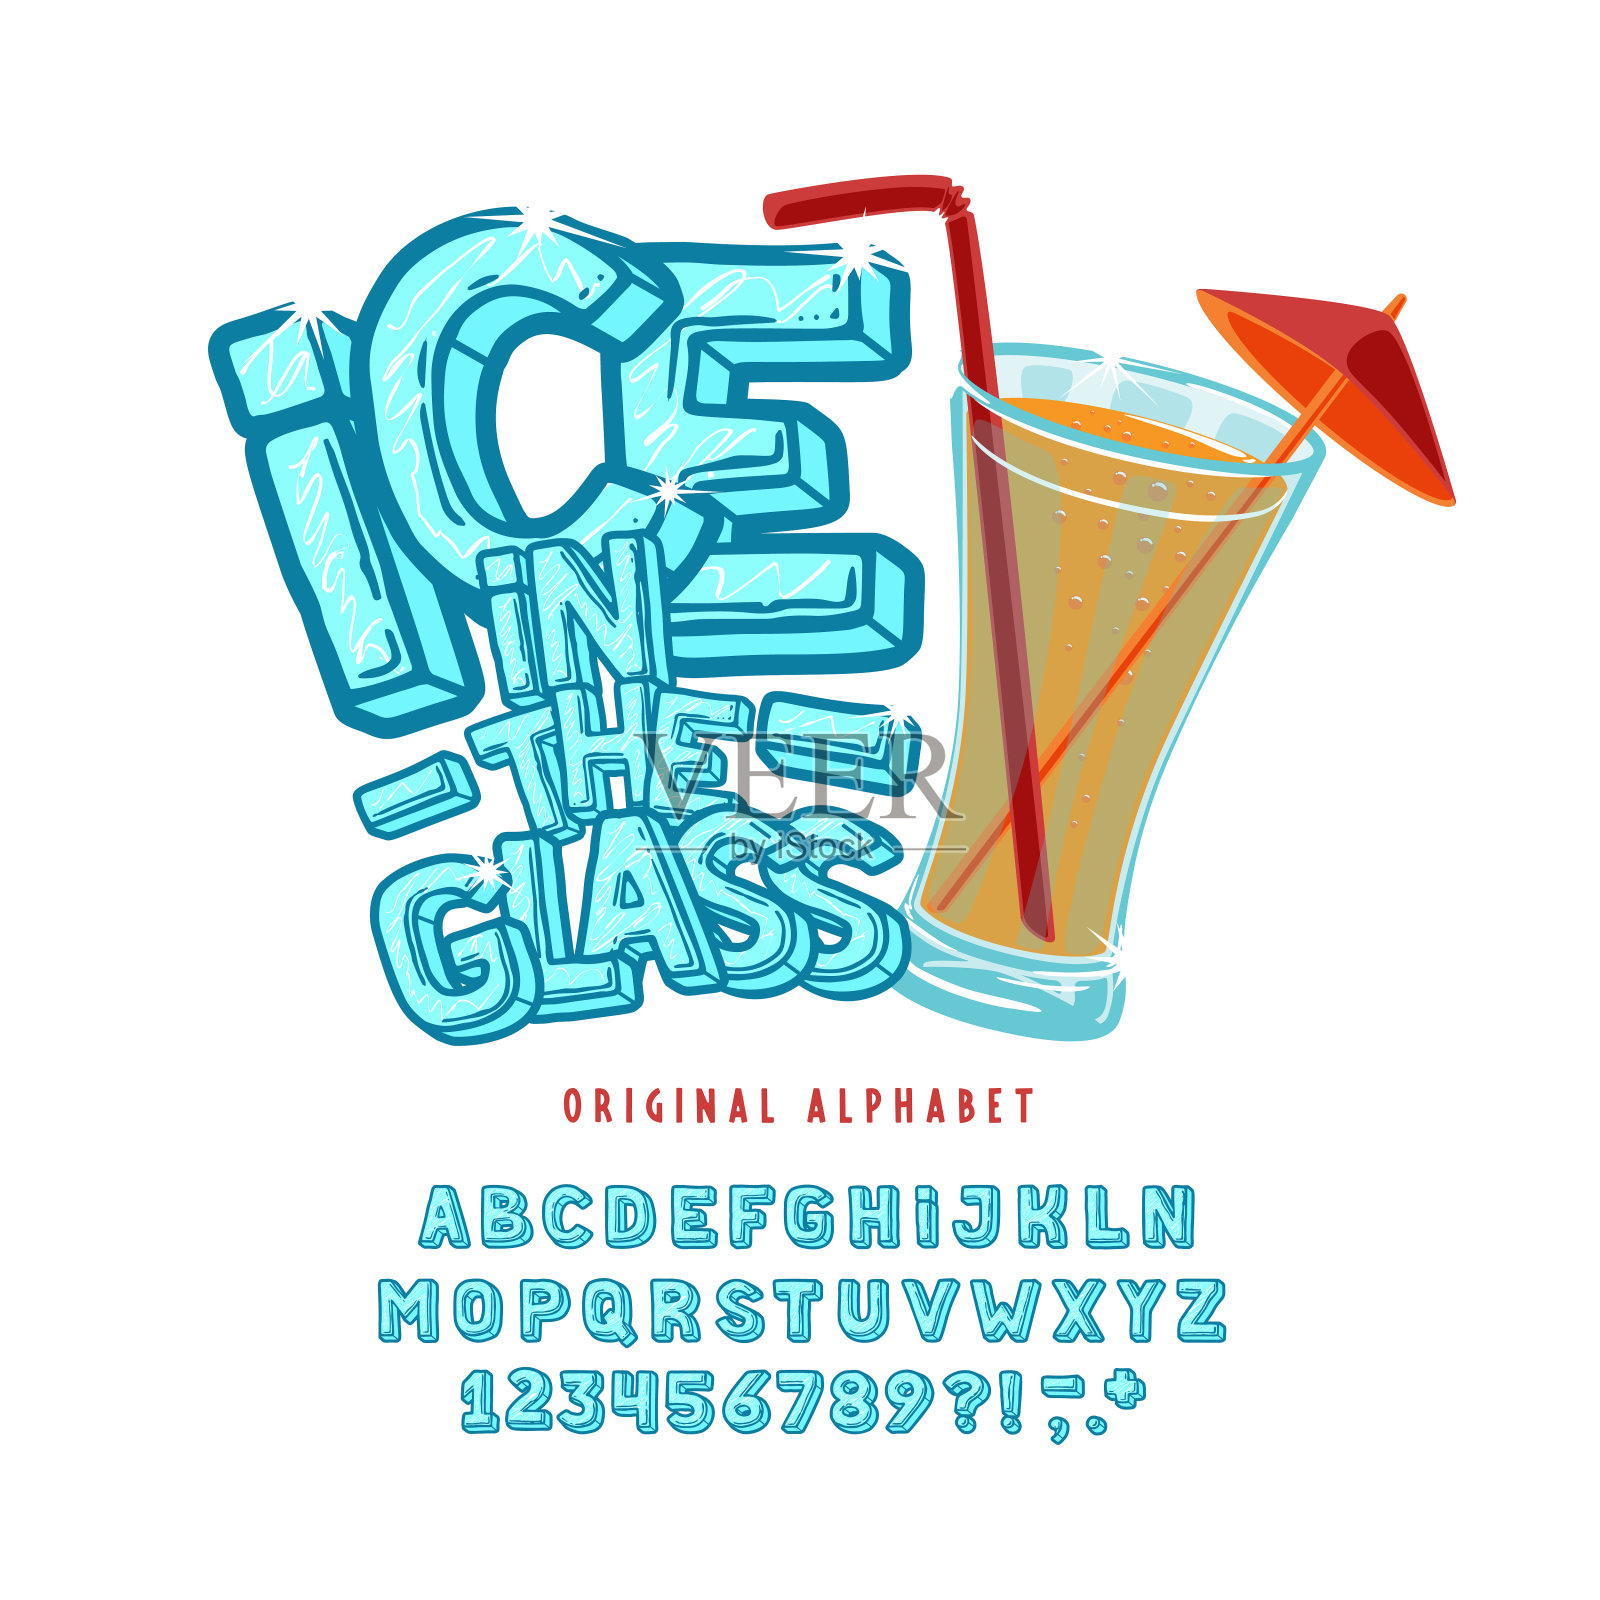 展示手工制作的复古字体冰在玻璃。设计元素图片